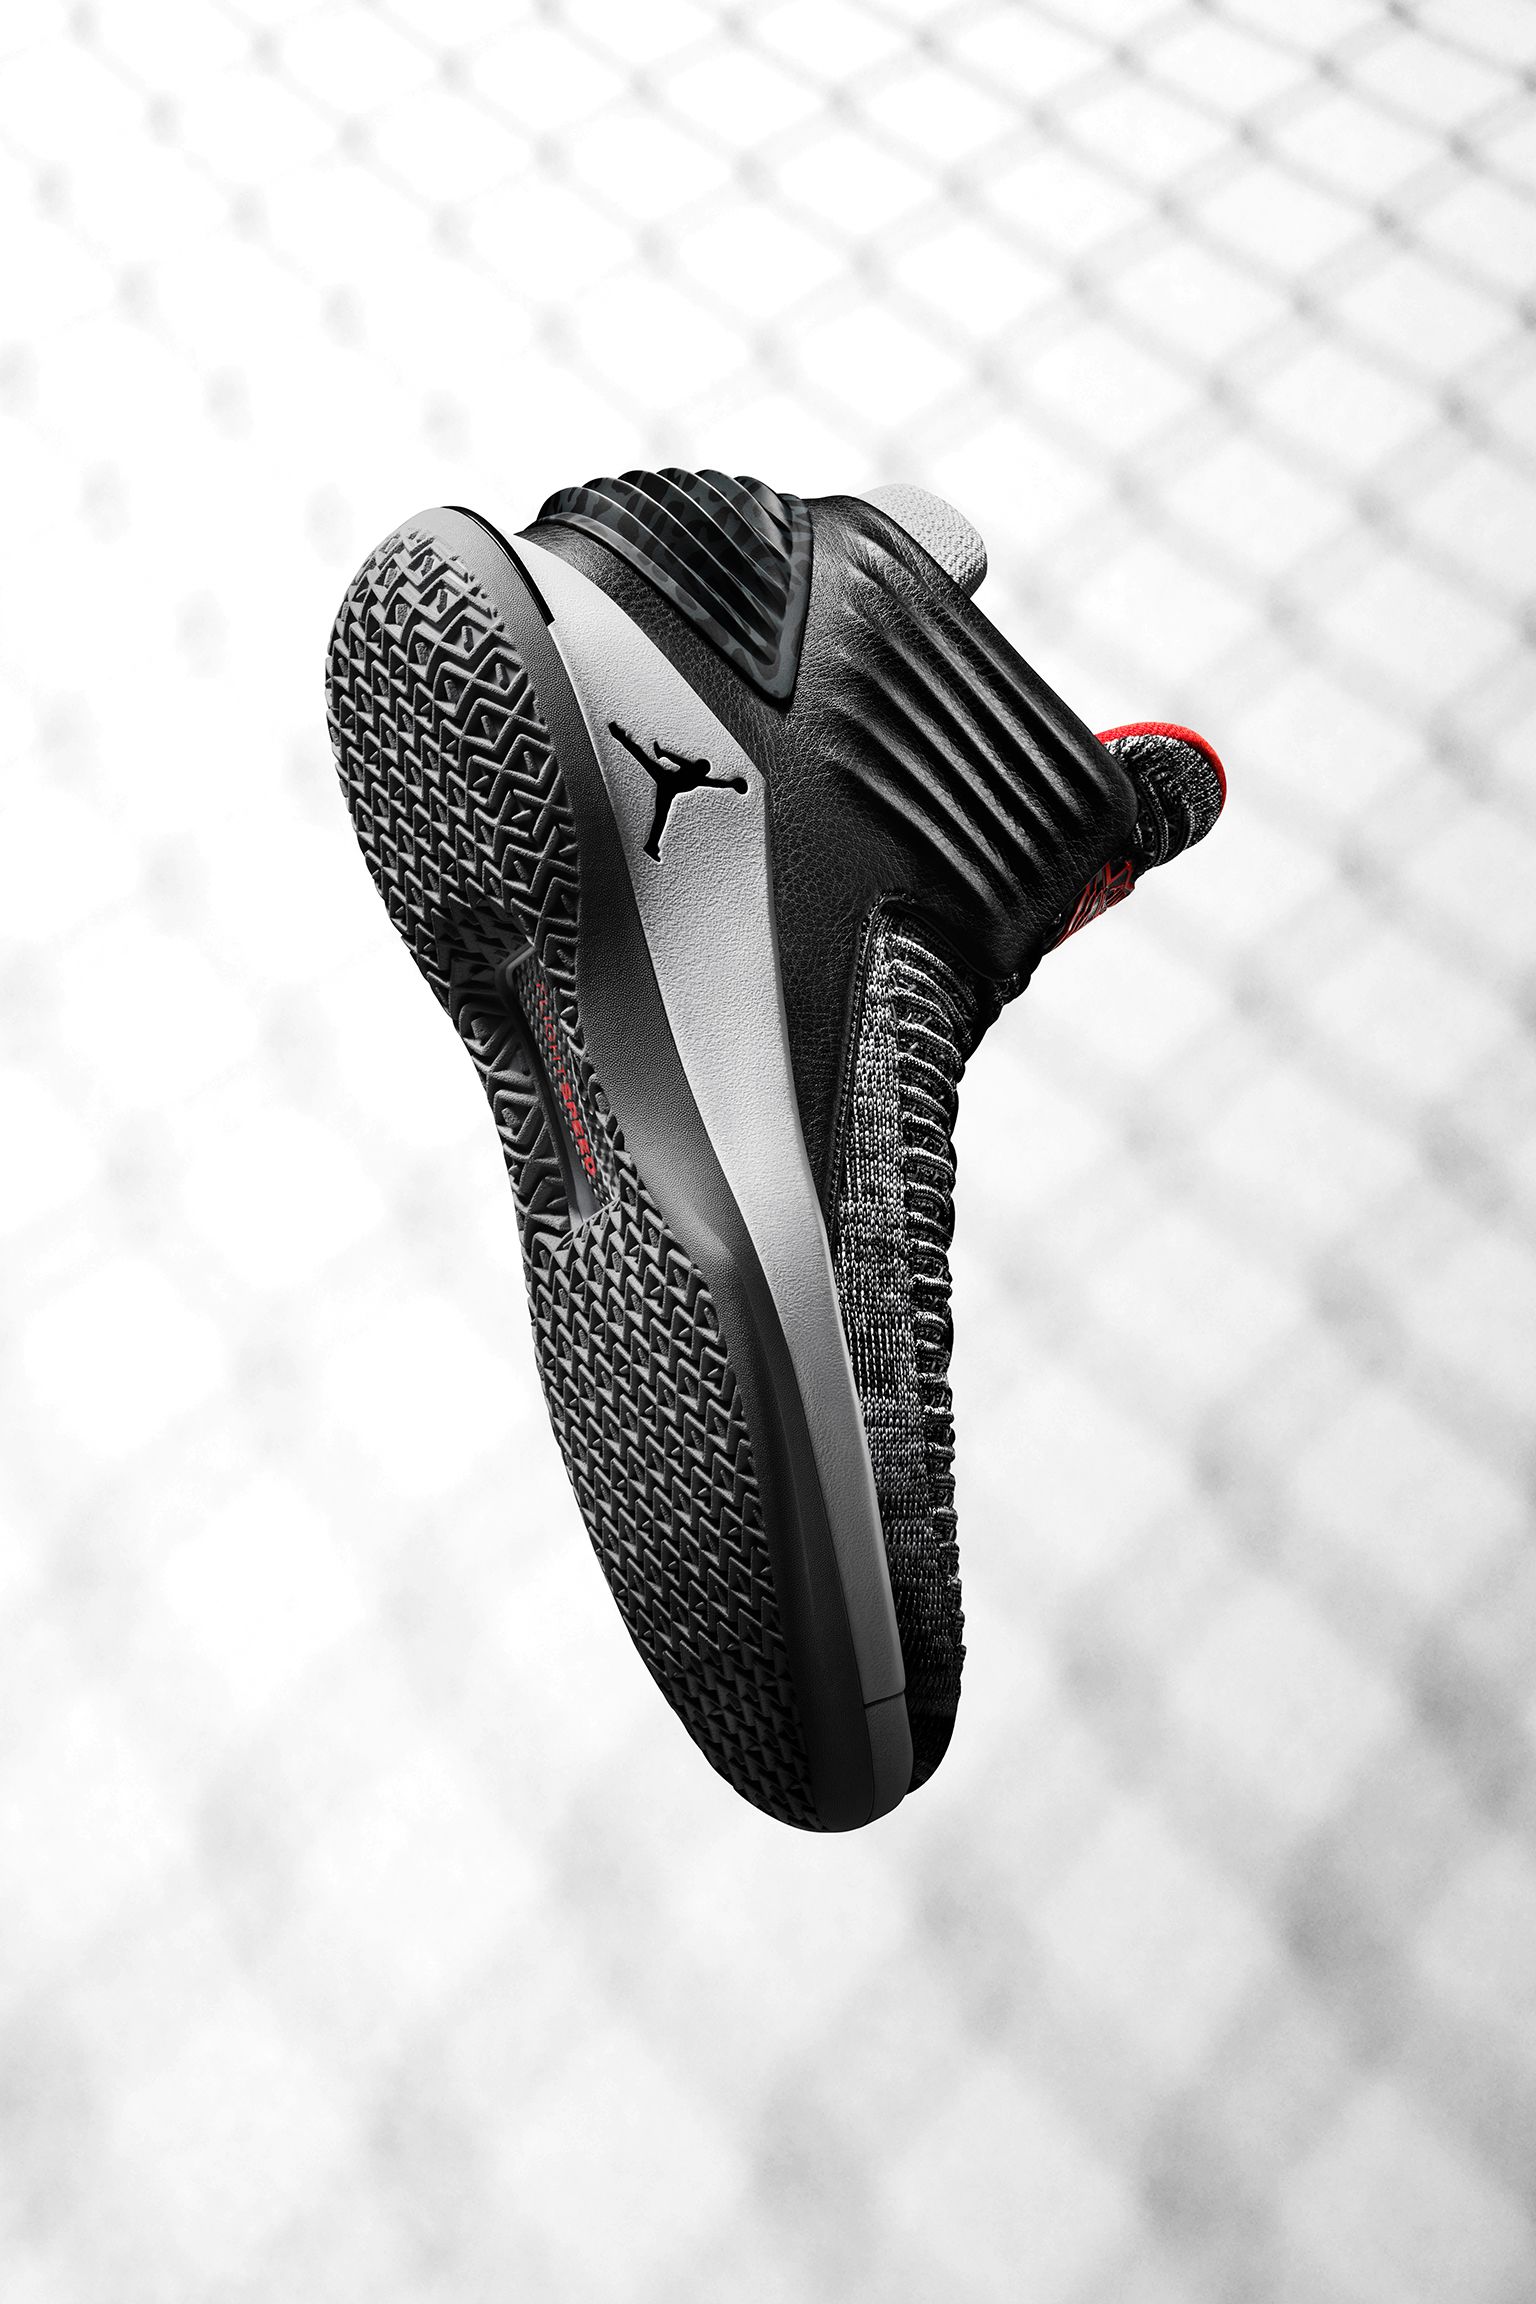 Air Jordan 32 Mvp Release Date Nike Snkrs